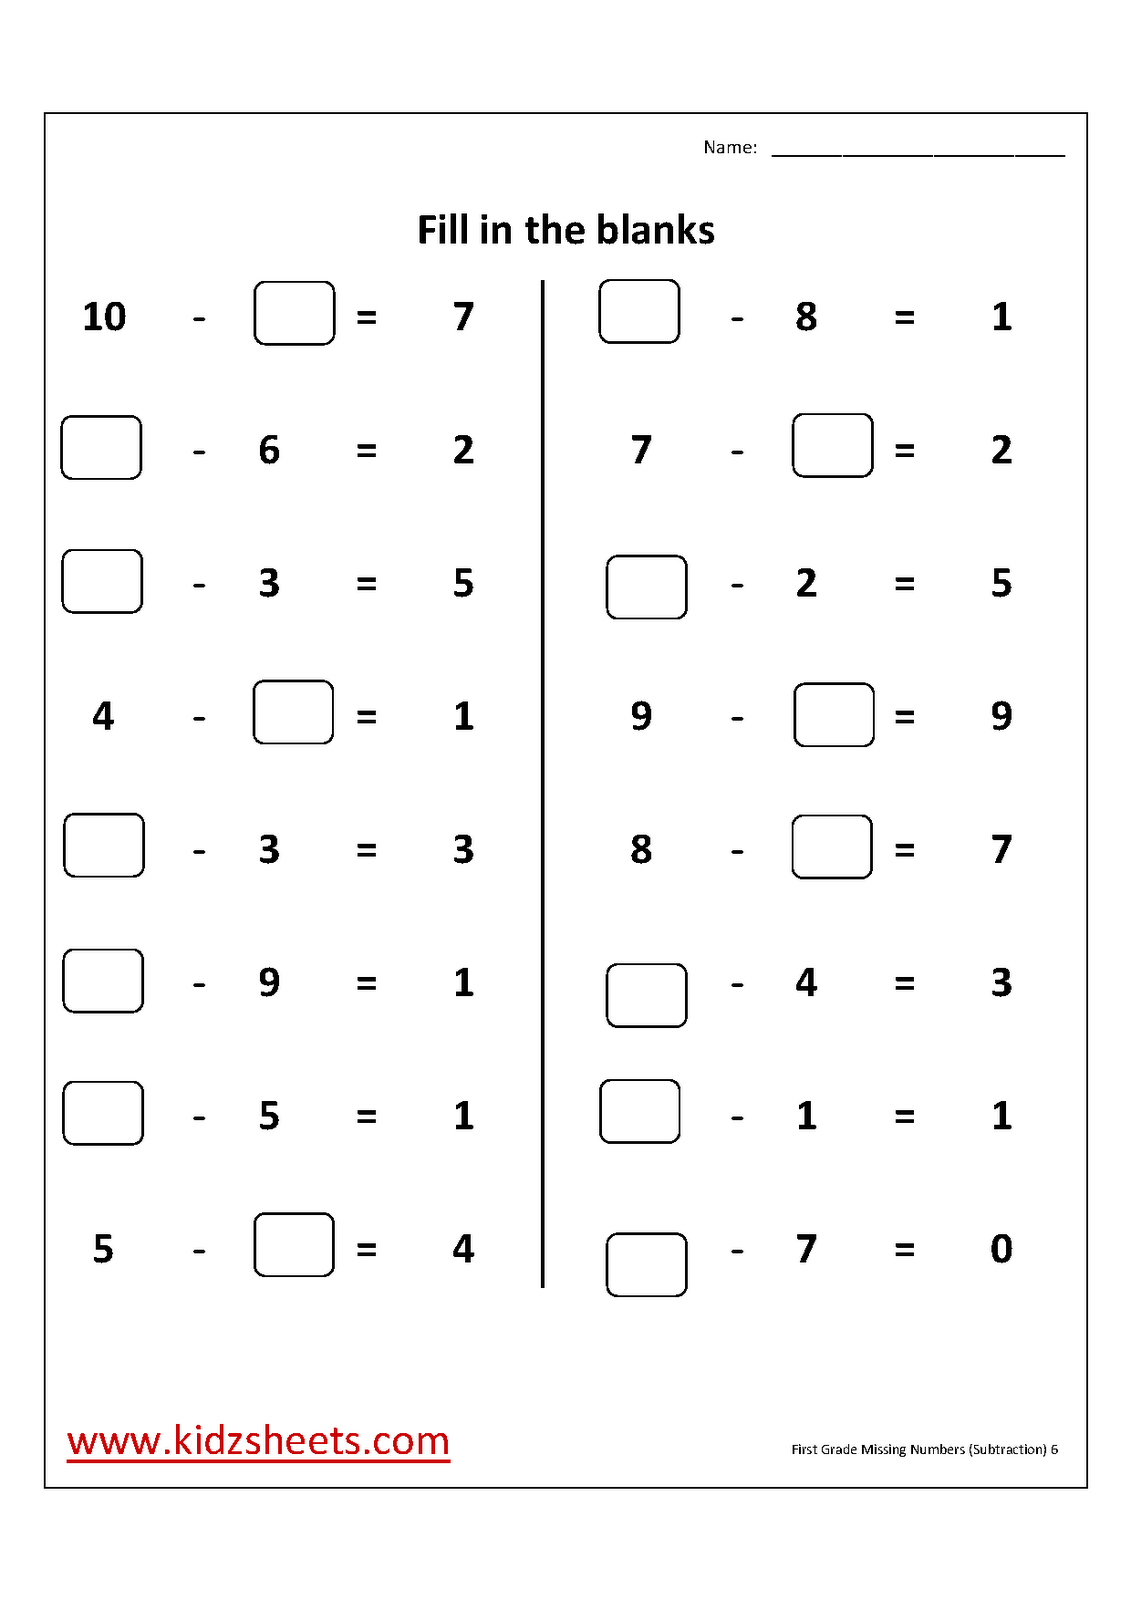 11 Missing Number Equations Worksheet